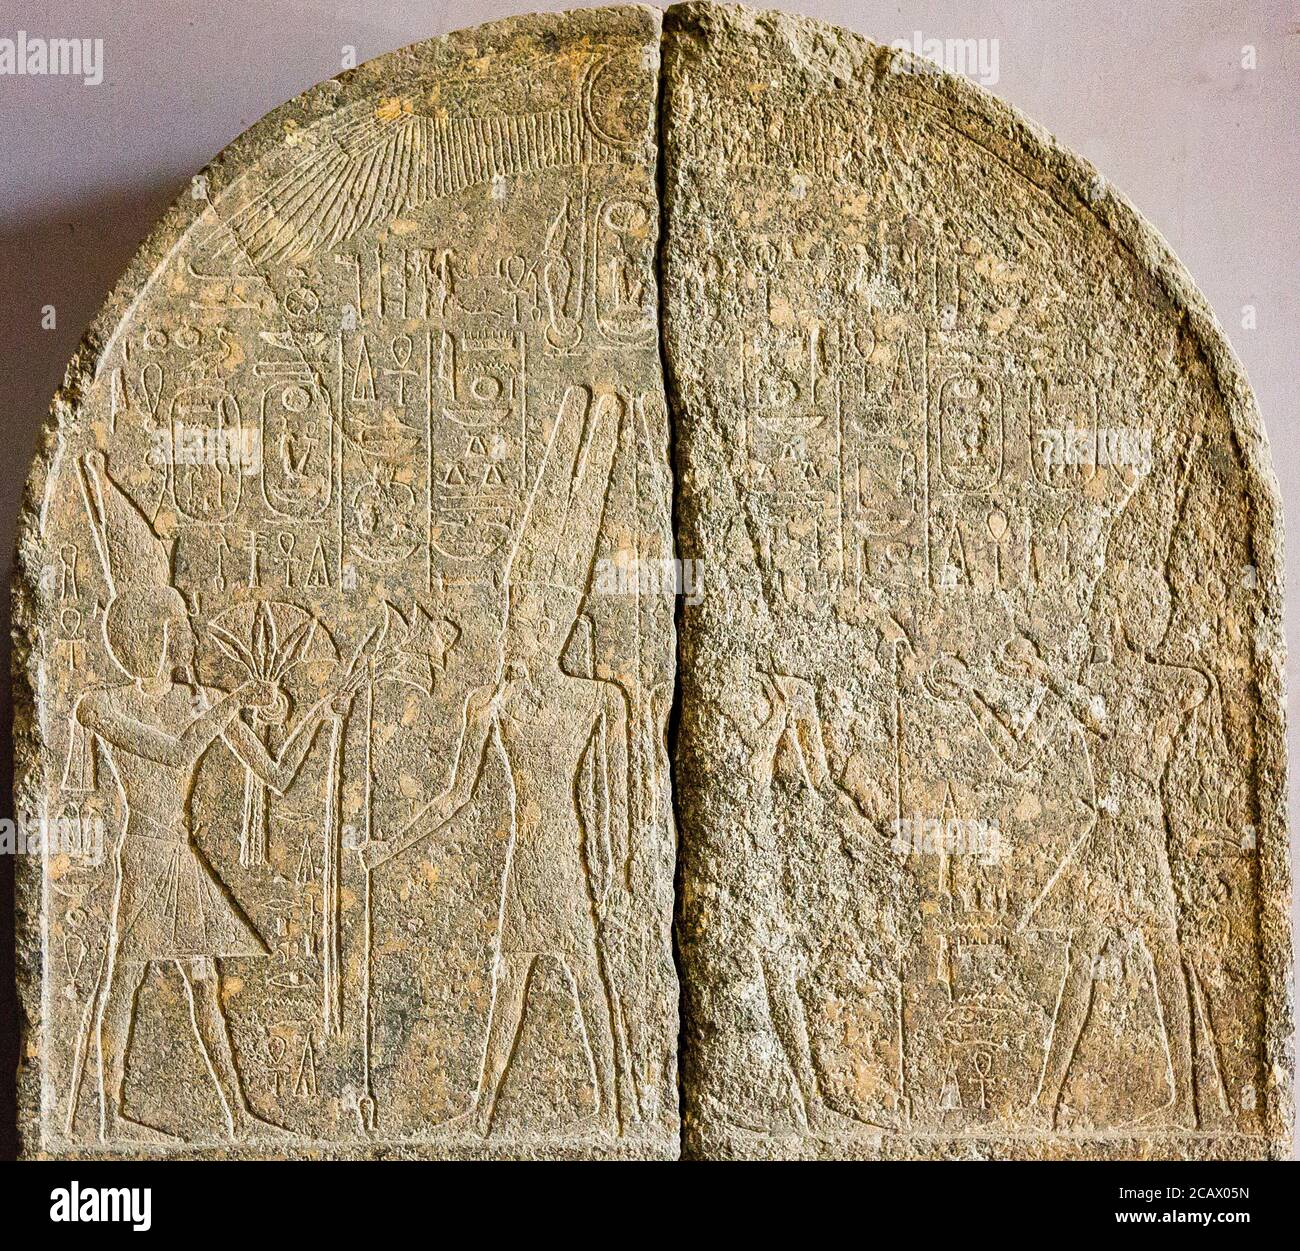 Ägypten, Kairo, Ägyptisches Museum, Stele in zwei Fragmenten, Amenophis III bietet Blumen und Nu Vasen (Wein) zu Amun. Stockfoto